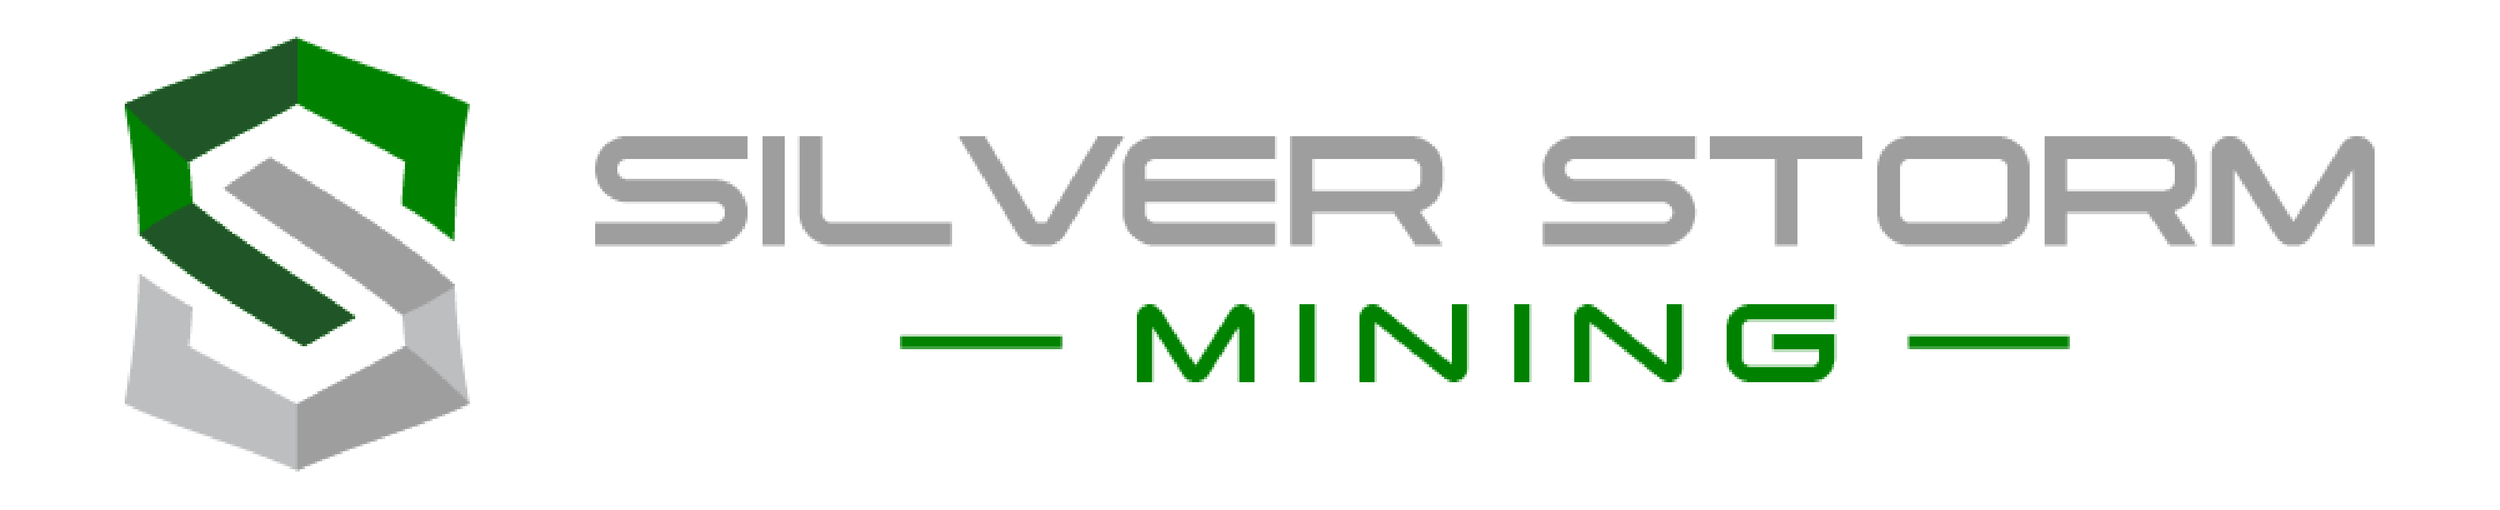 Silver Storm Mining Ltd.